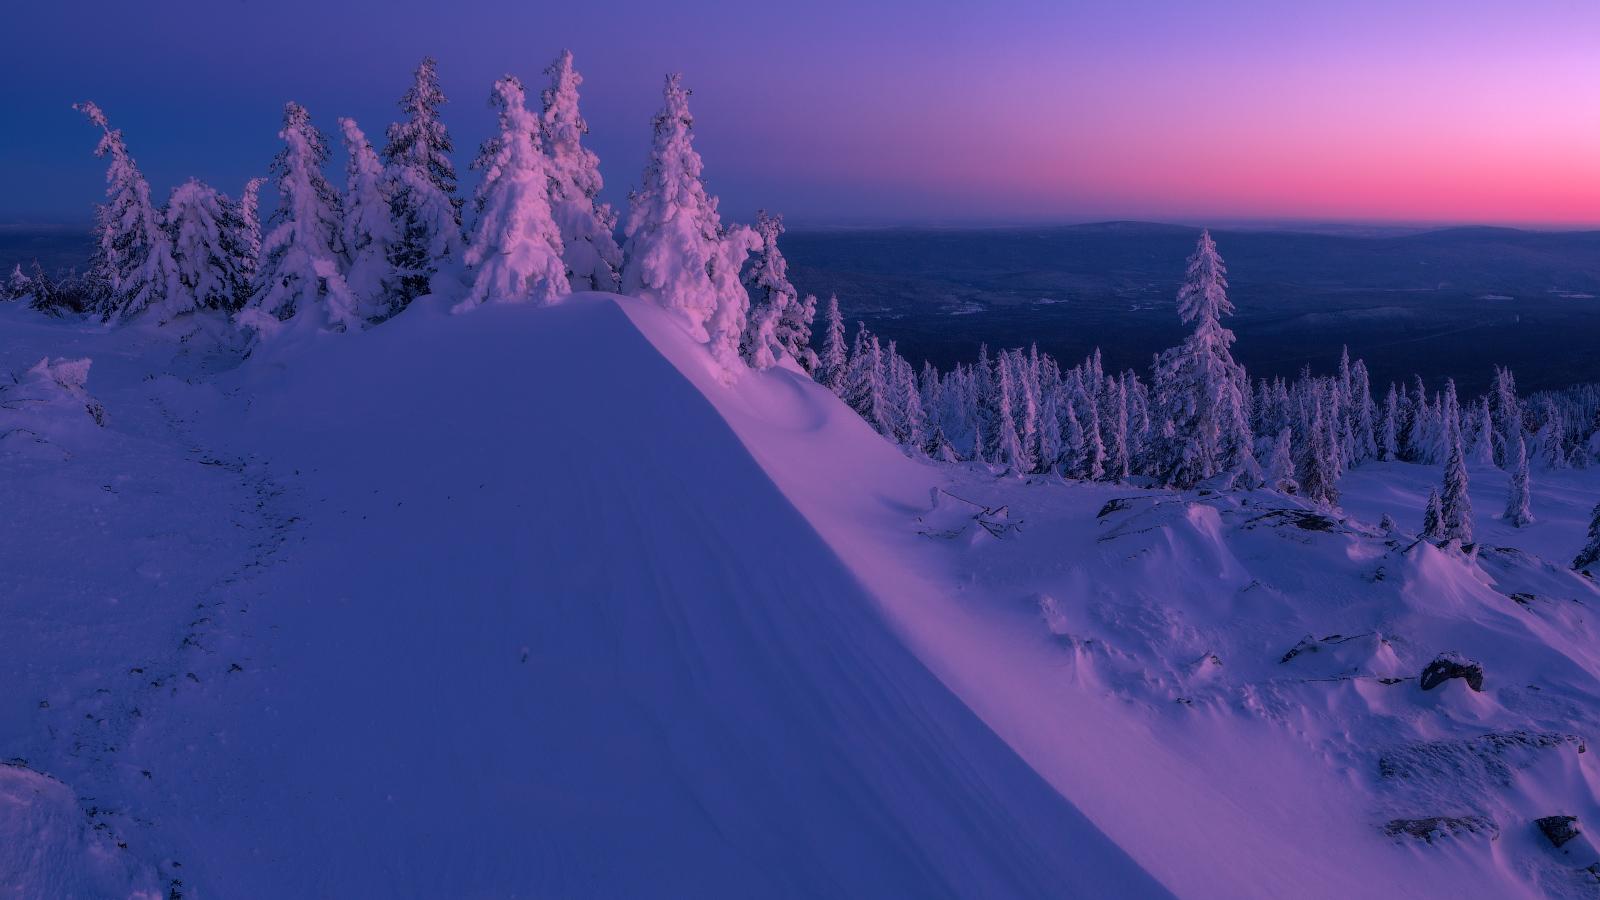 Самые красивые зимние картинки (56 фото)